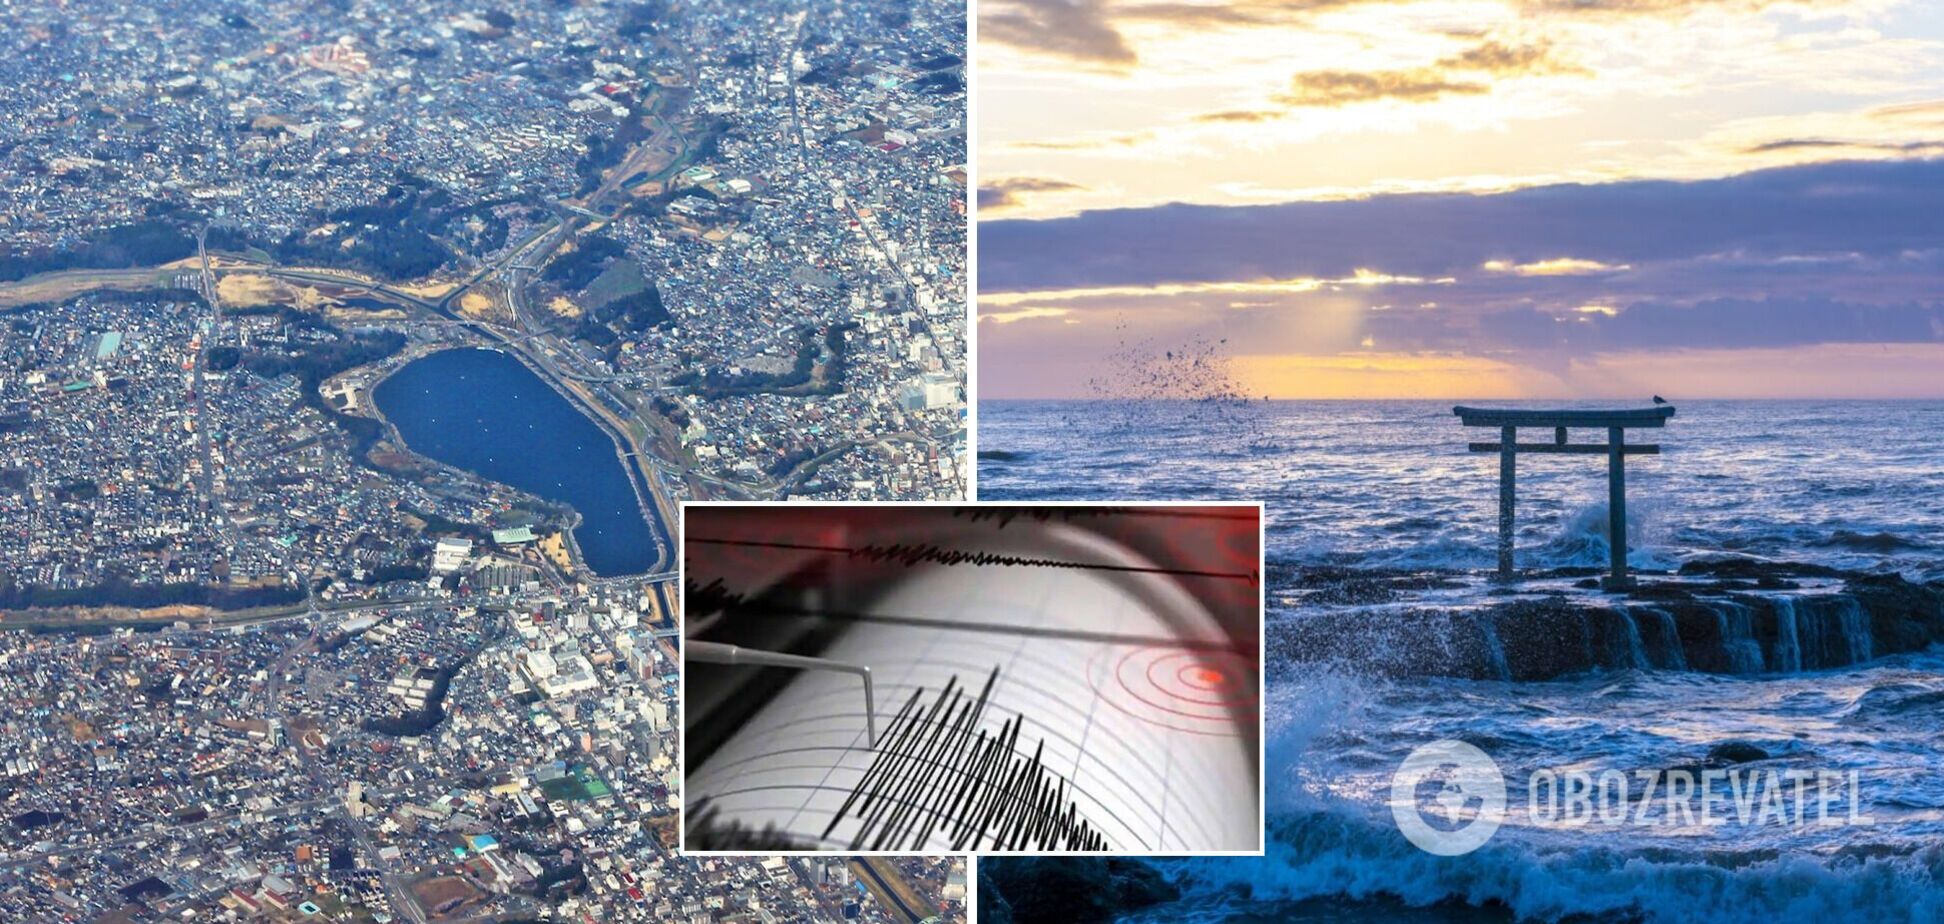 В Японии зафиксировали землетрясение магнитудой 5 баллов: появились подробности